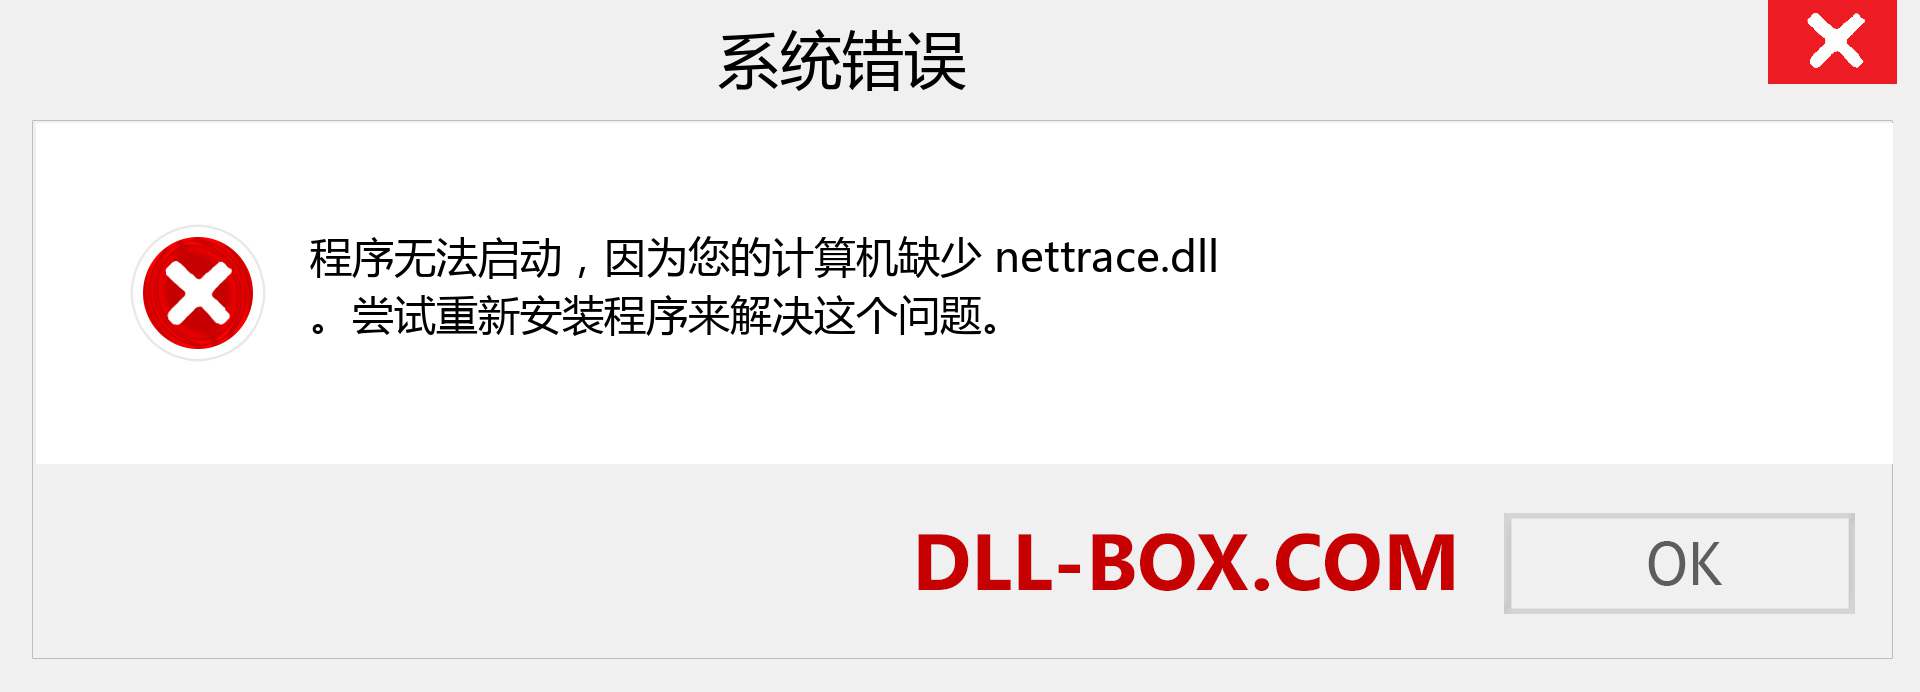 nettrace.dll 文件丢失？。 适用于 Windows 7、8、10 的下载 - 修复 Windows、照片、图像上的 nettrace dll 丢失错误